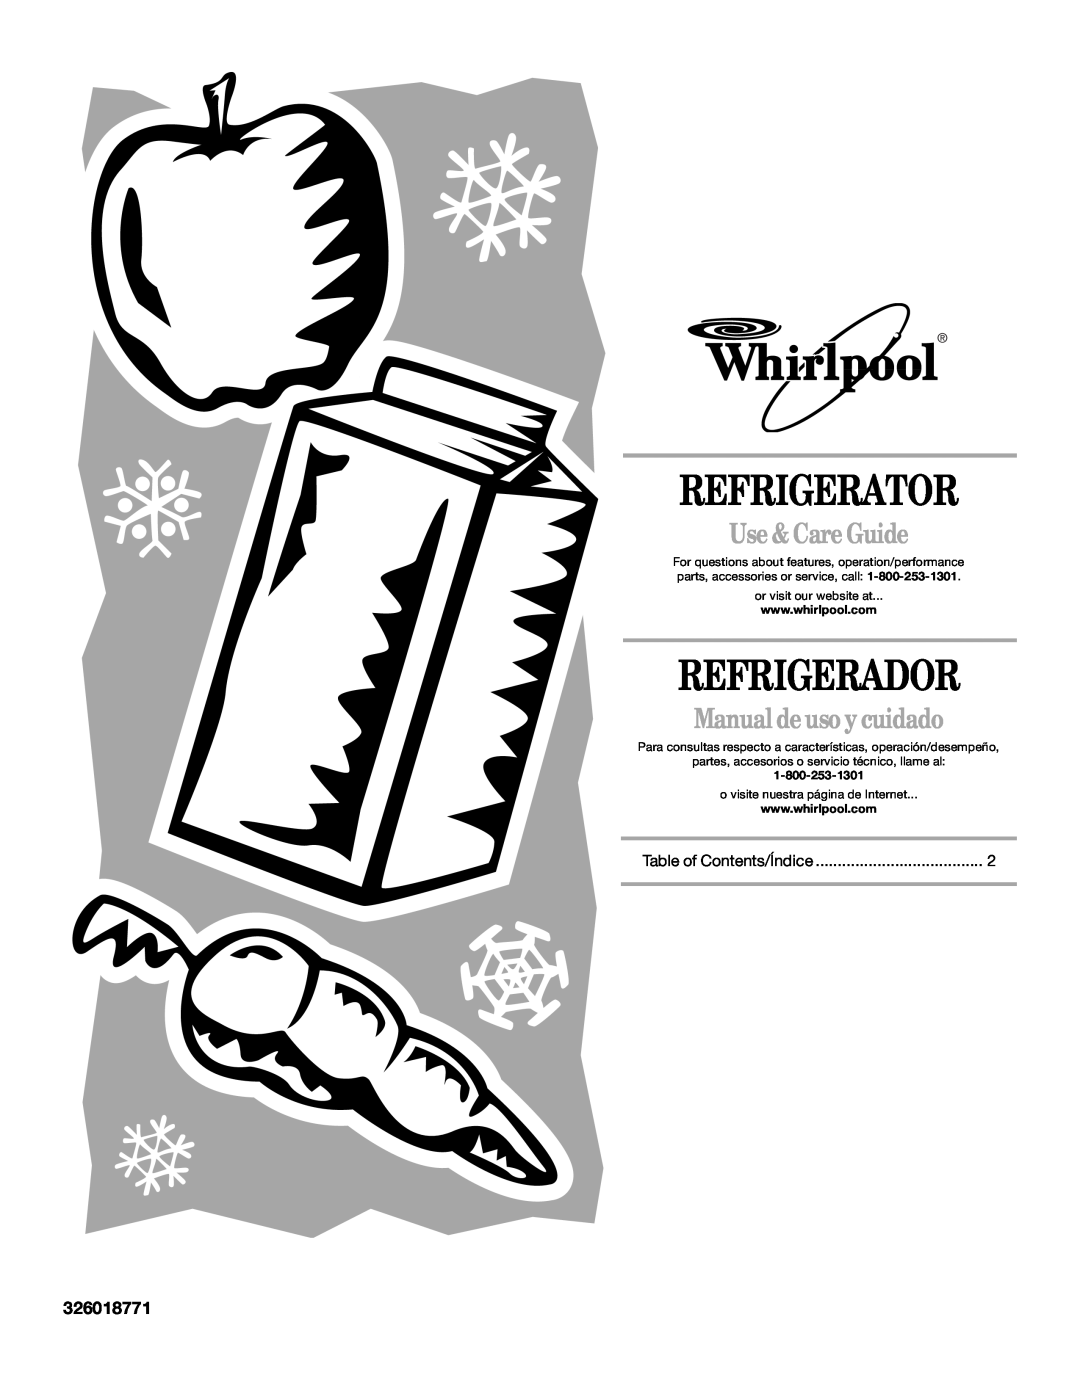 Whirlpool EL1WSRXLQ0 manual Refrigerator, Refrigerador, Use & Care Guide, Manual de uso y cuidado, 326018771 